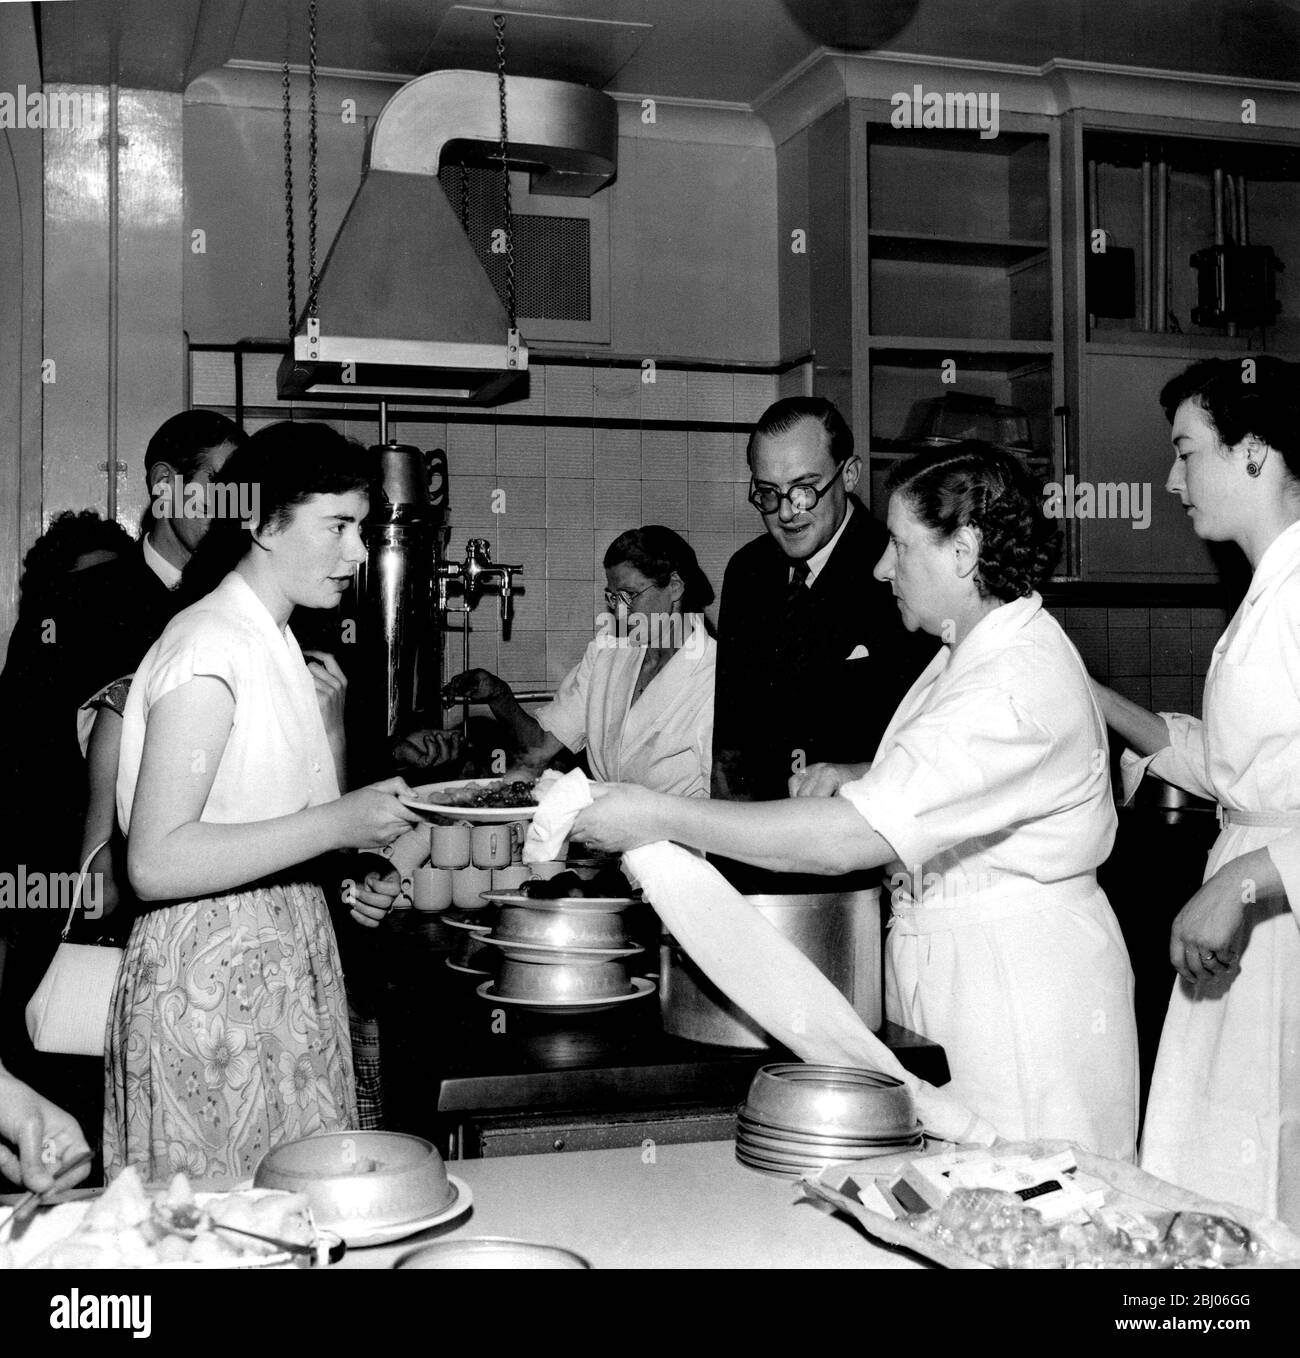 Nigel Radcliffe visite les cuisines parfaites du monde et installe tout, d'une cuisine complète à un grill capable de cuisiner un steak en soixante secondes. Il est vu ici en regardant le personnel de service dans une cantine à Londres où son équipement est utilisé. - 1954 Banque D'Images